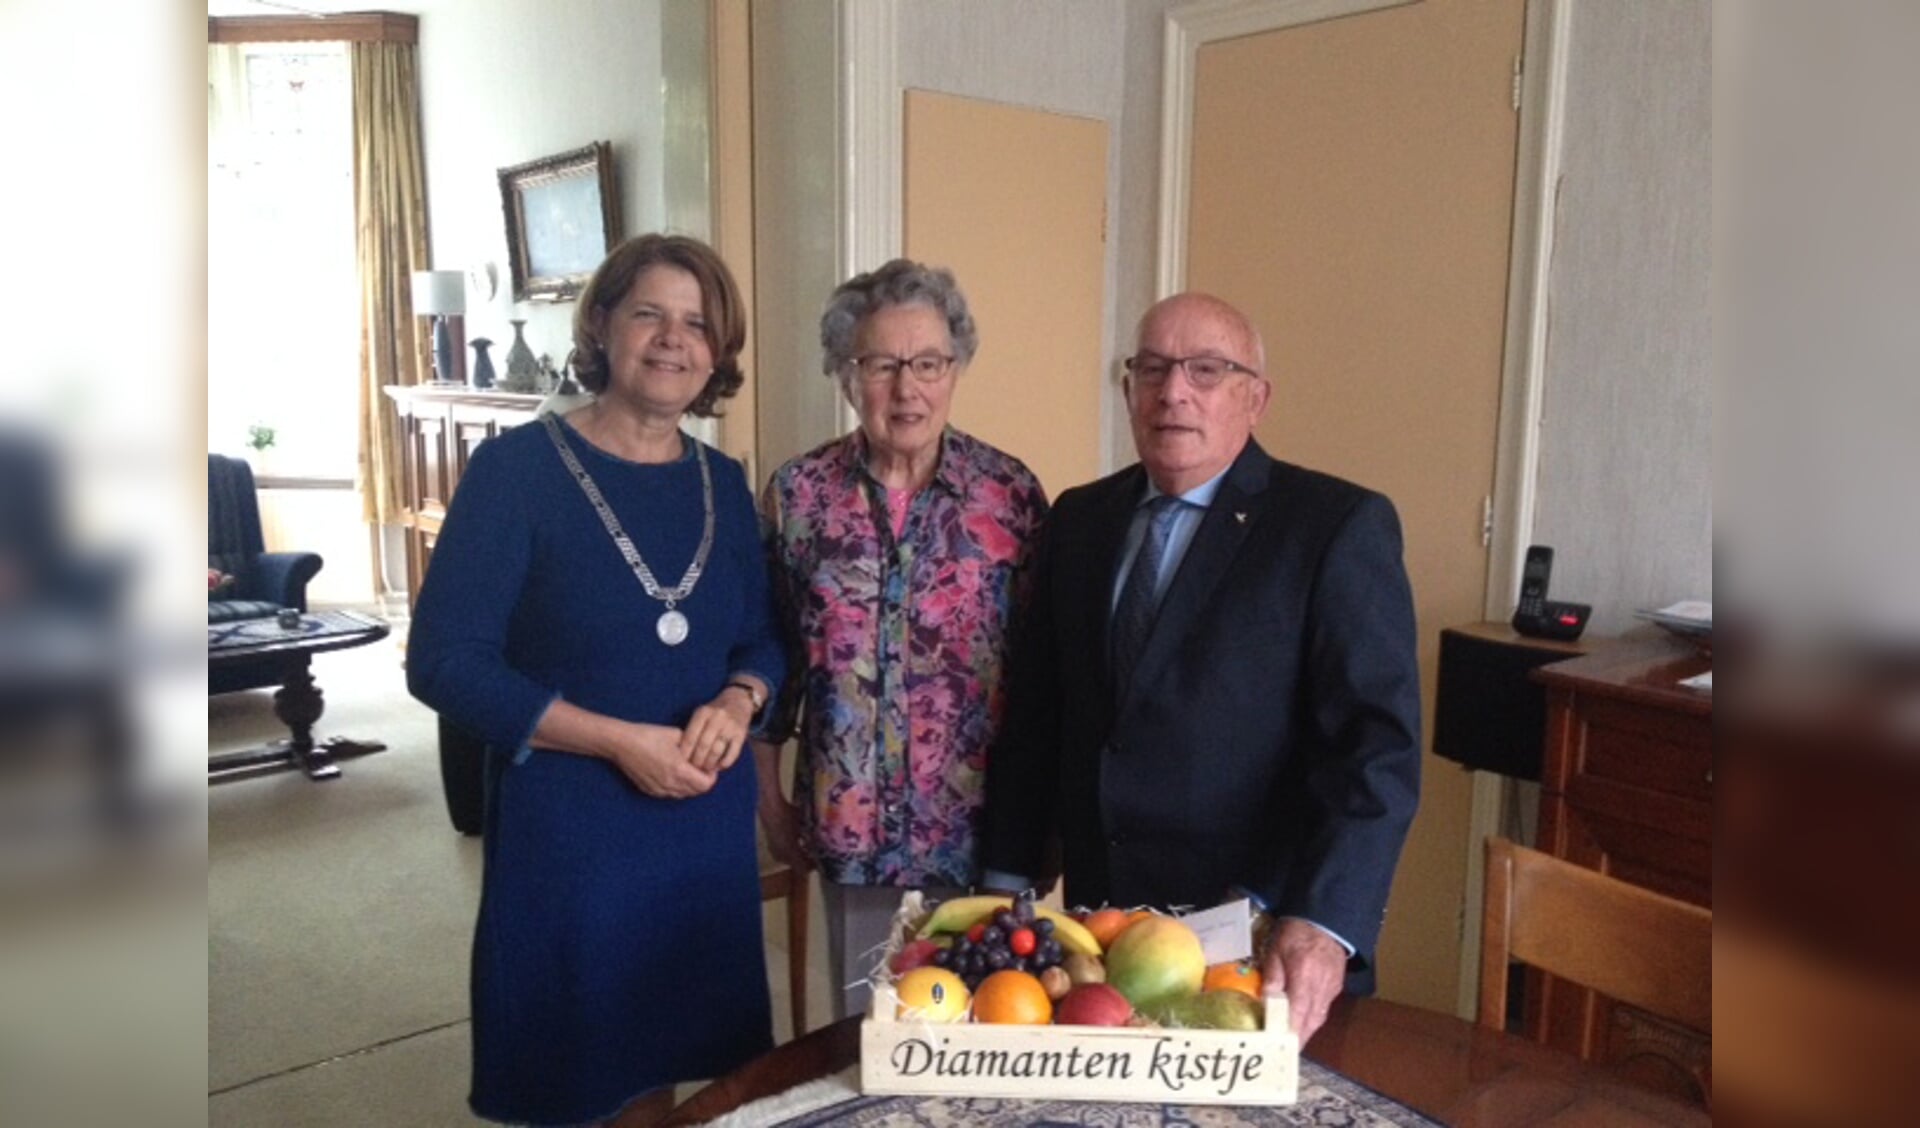 Op 15 mei waren de heer en mevrouw Vermeij 60 jaar getrouwd. Burgemeester Van Bijsterveldt kwam langs met de felicitaties.